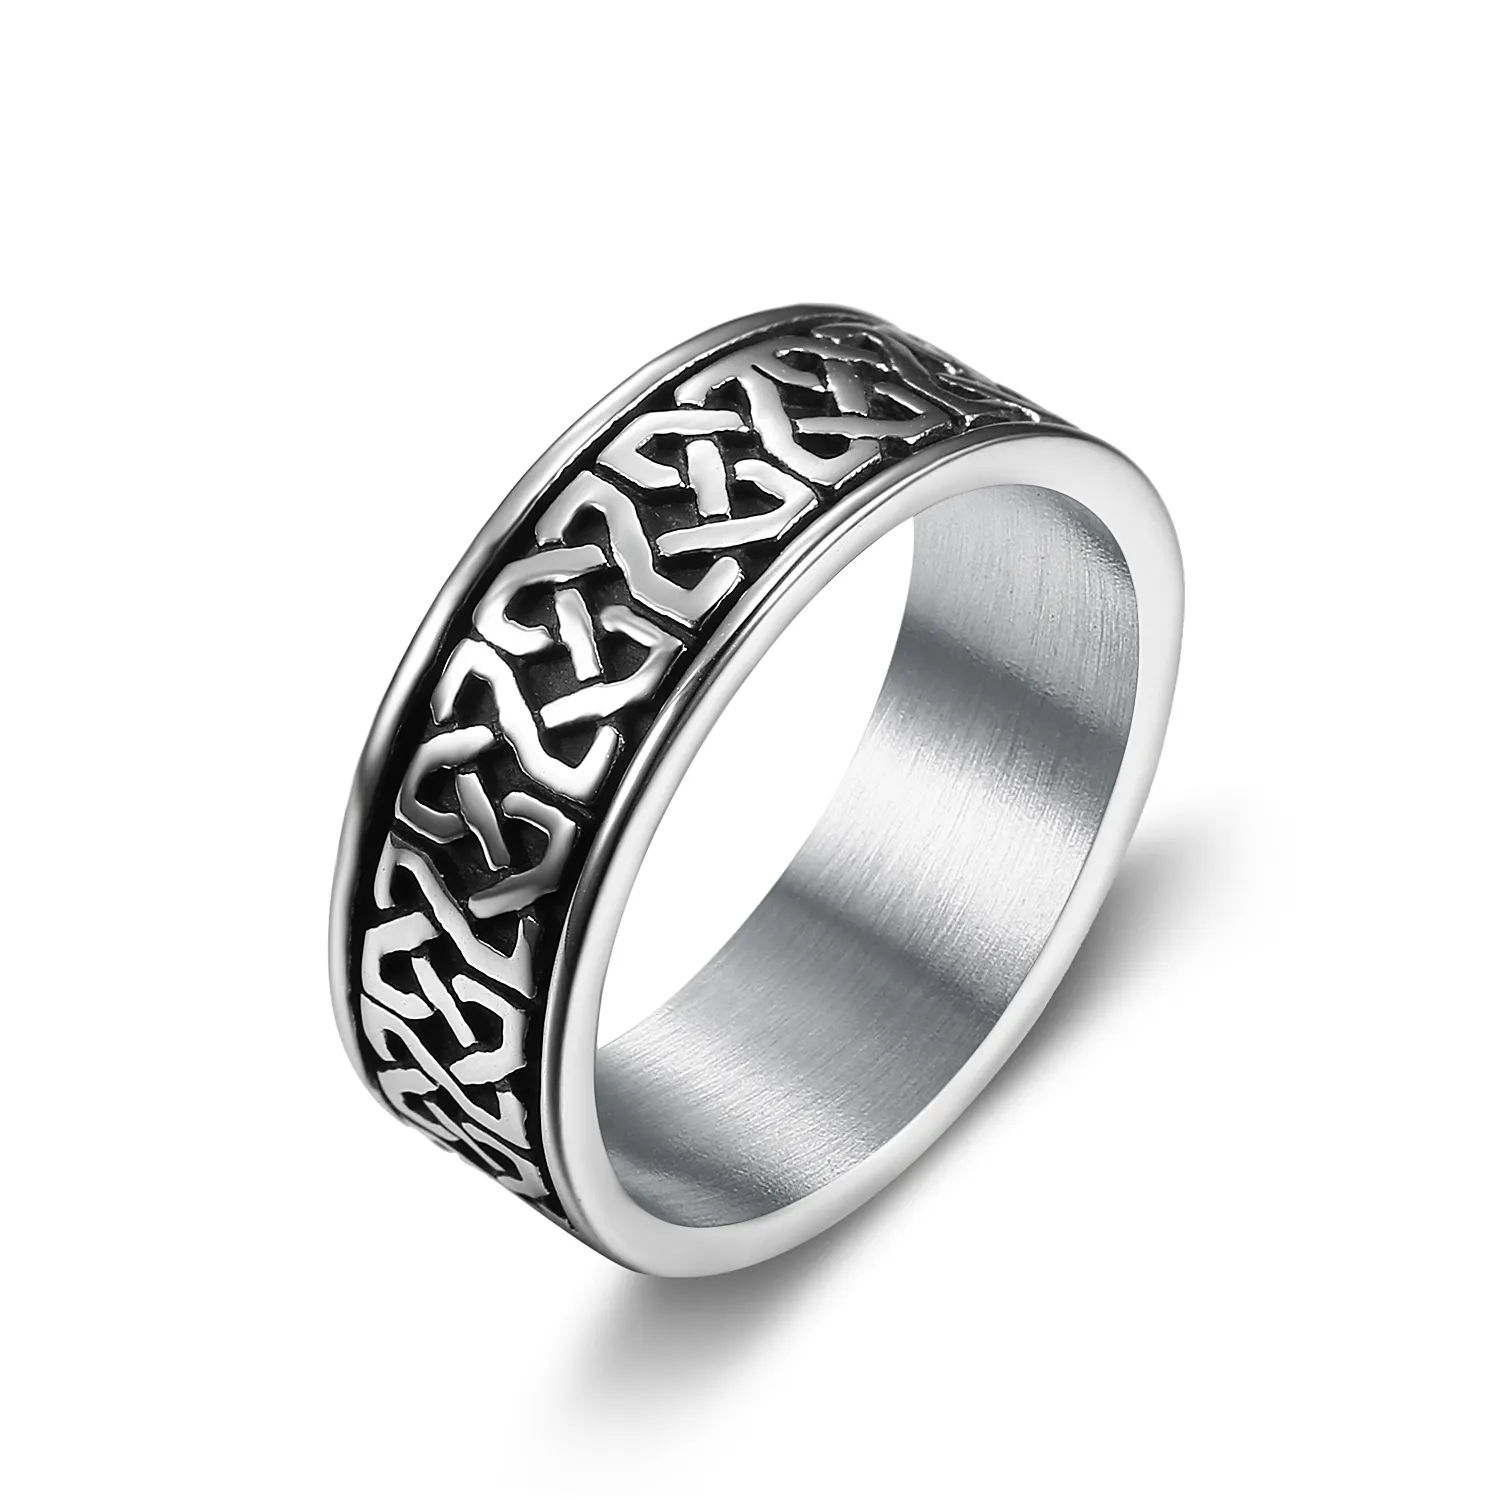 Custom Design Stainless Steel Men Vintage Geometric Celtic knot Rings Irish Knot Round Band Ring for Men Women